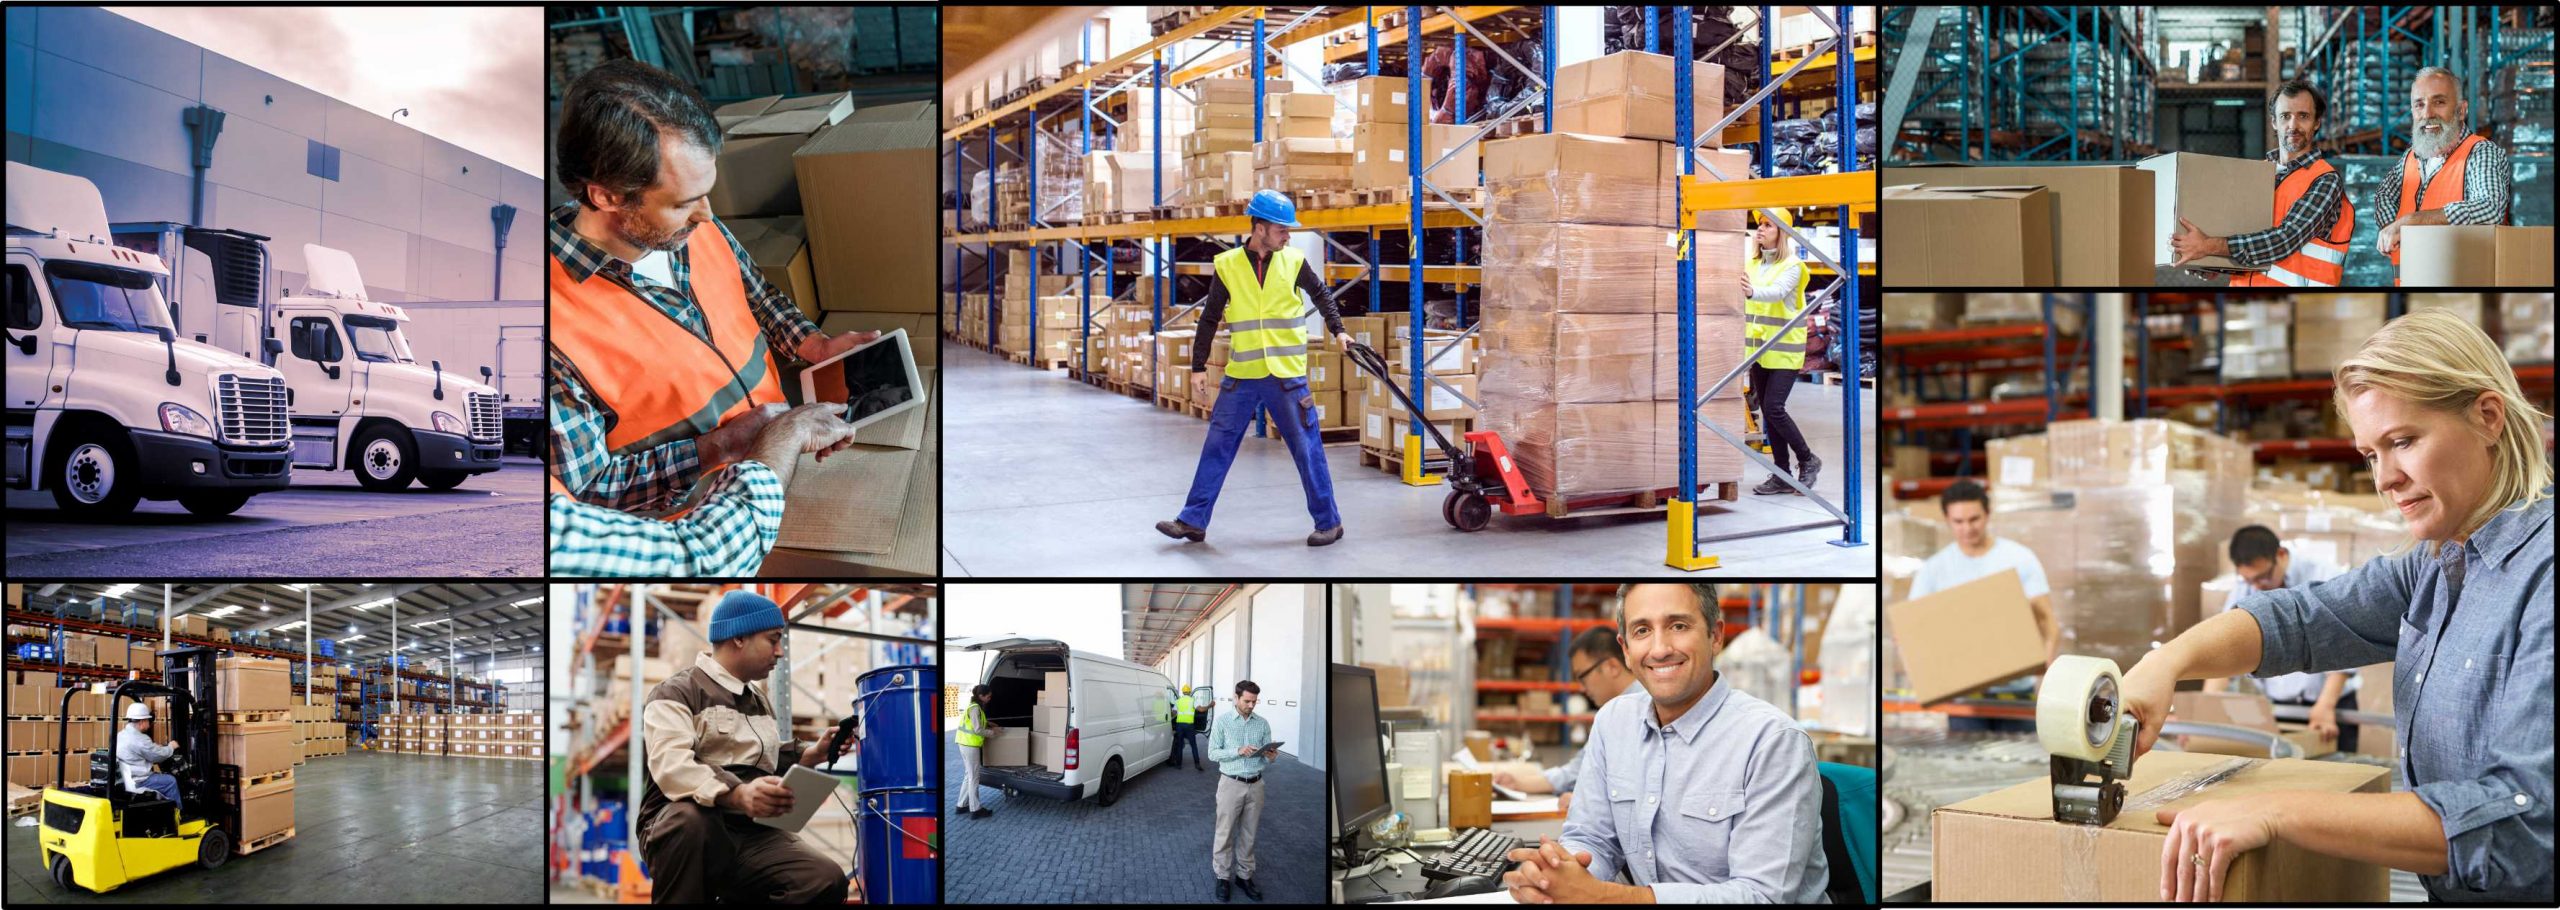 Warehouse Training Management System